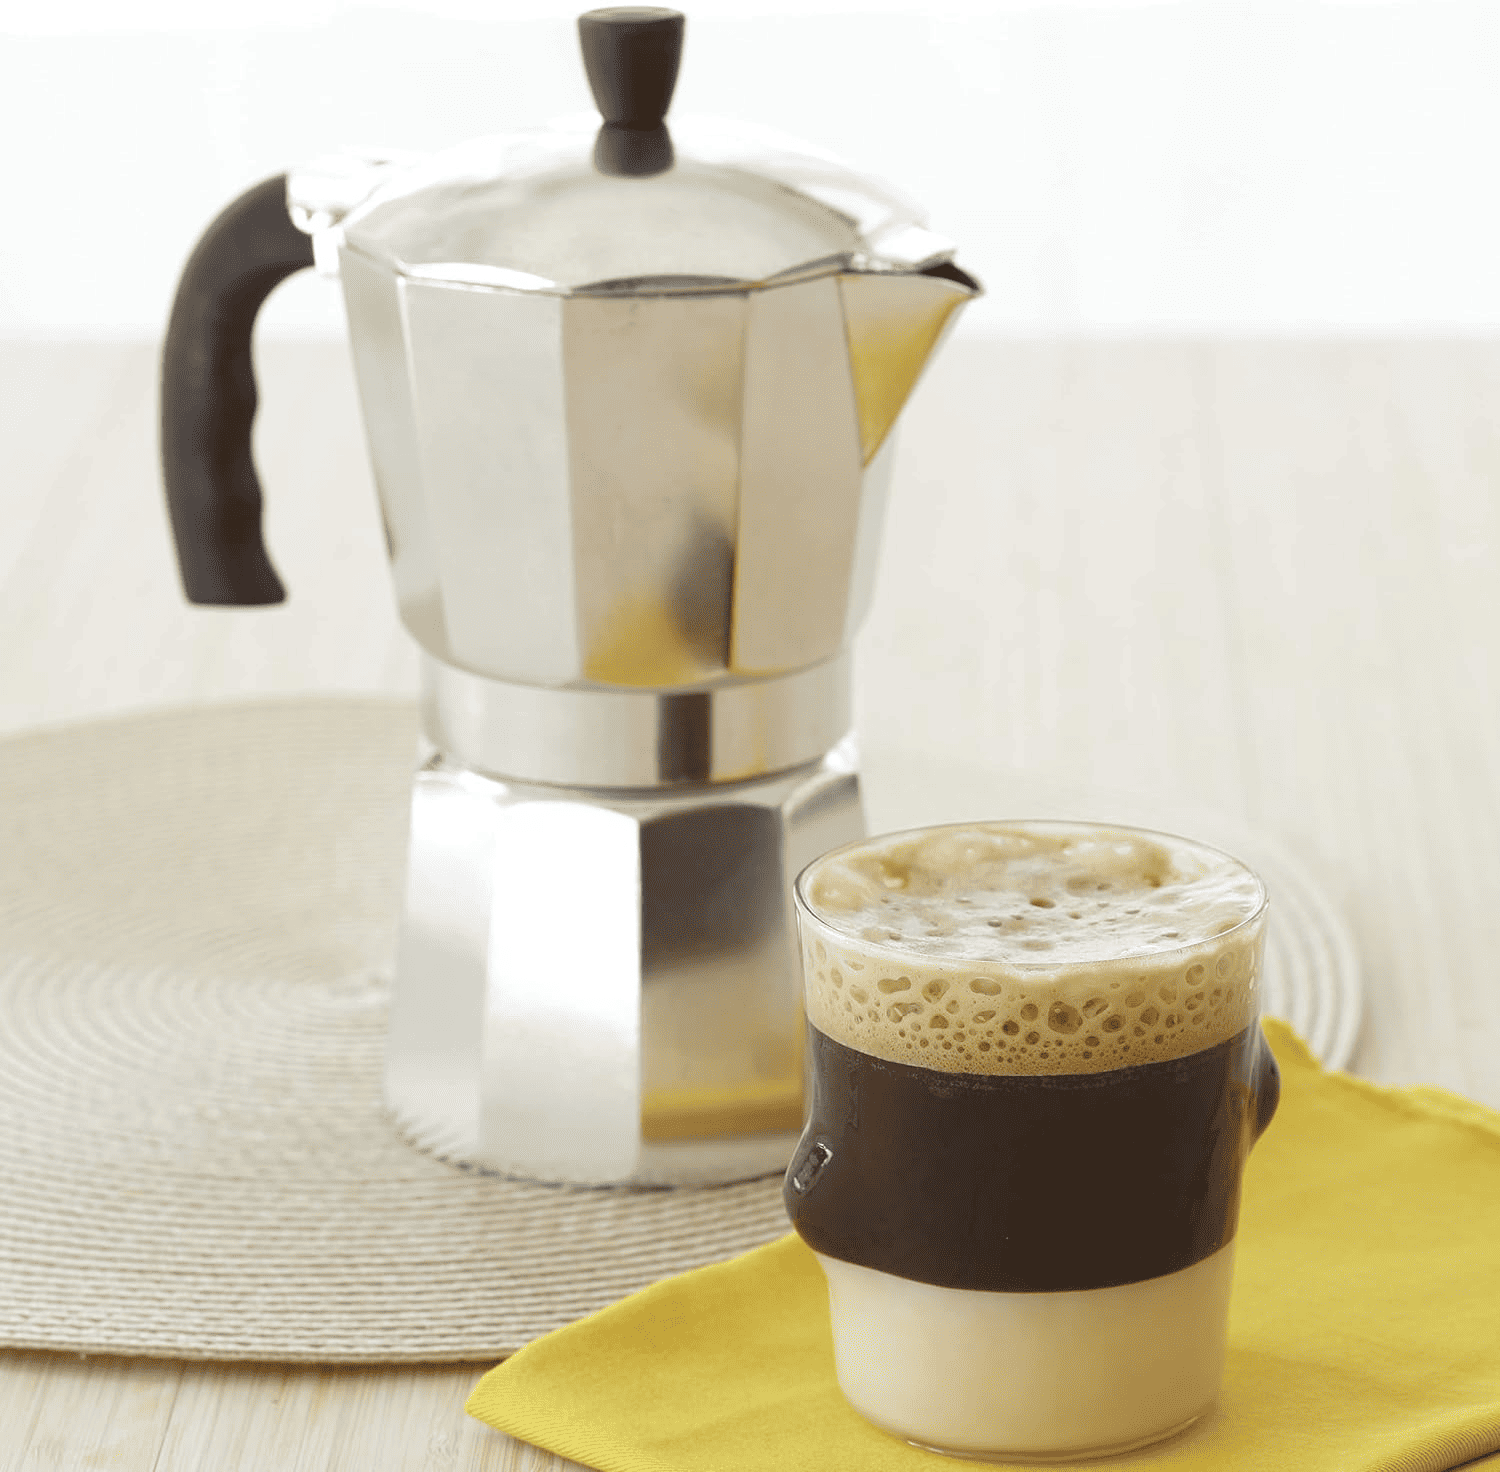 atovetop espresso maker to make maca coffee 